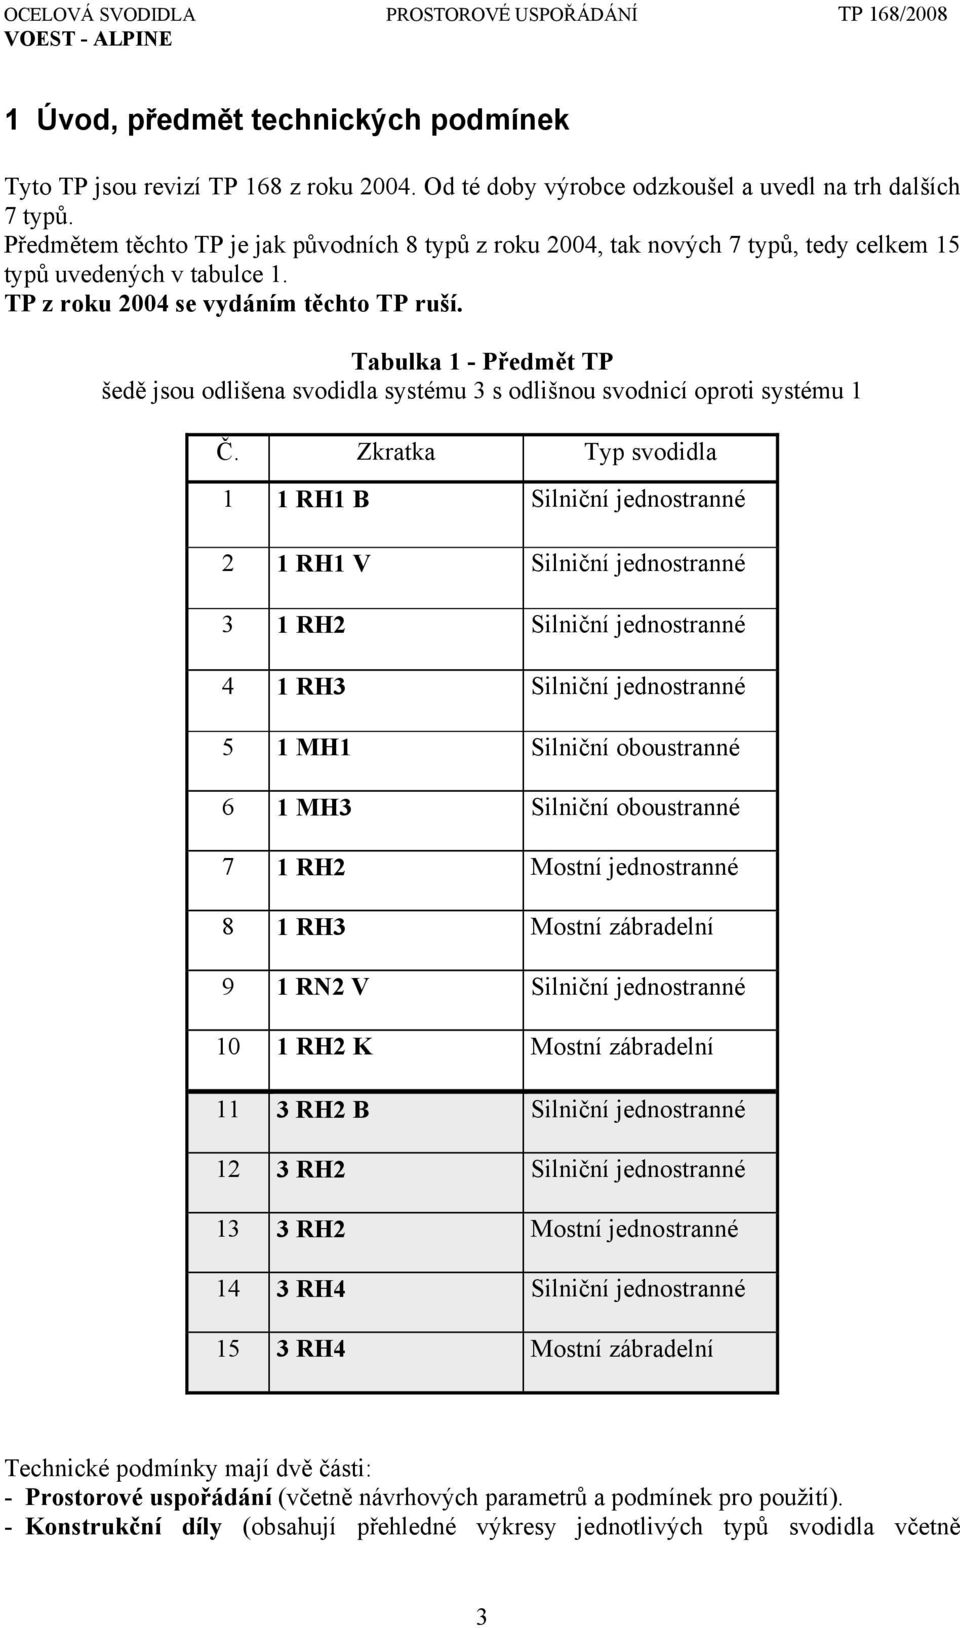 Tabulka 1 - Předmět TP šedě jsou odlišena svodidla systému 3 s odlišnou svodnicí oproti systému 1 Č.